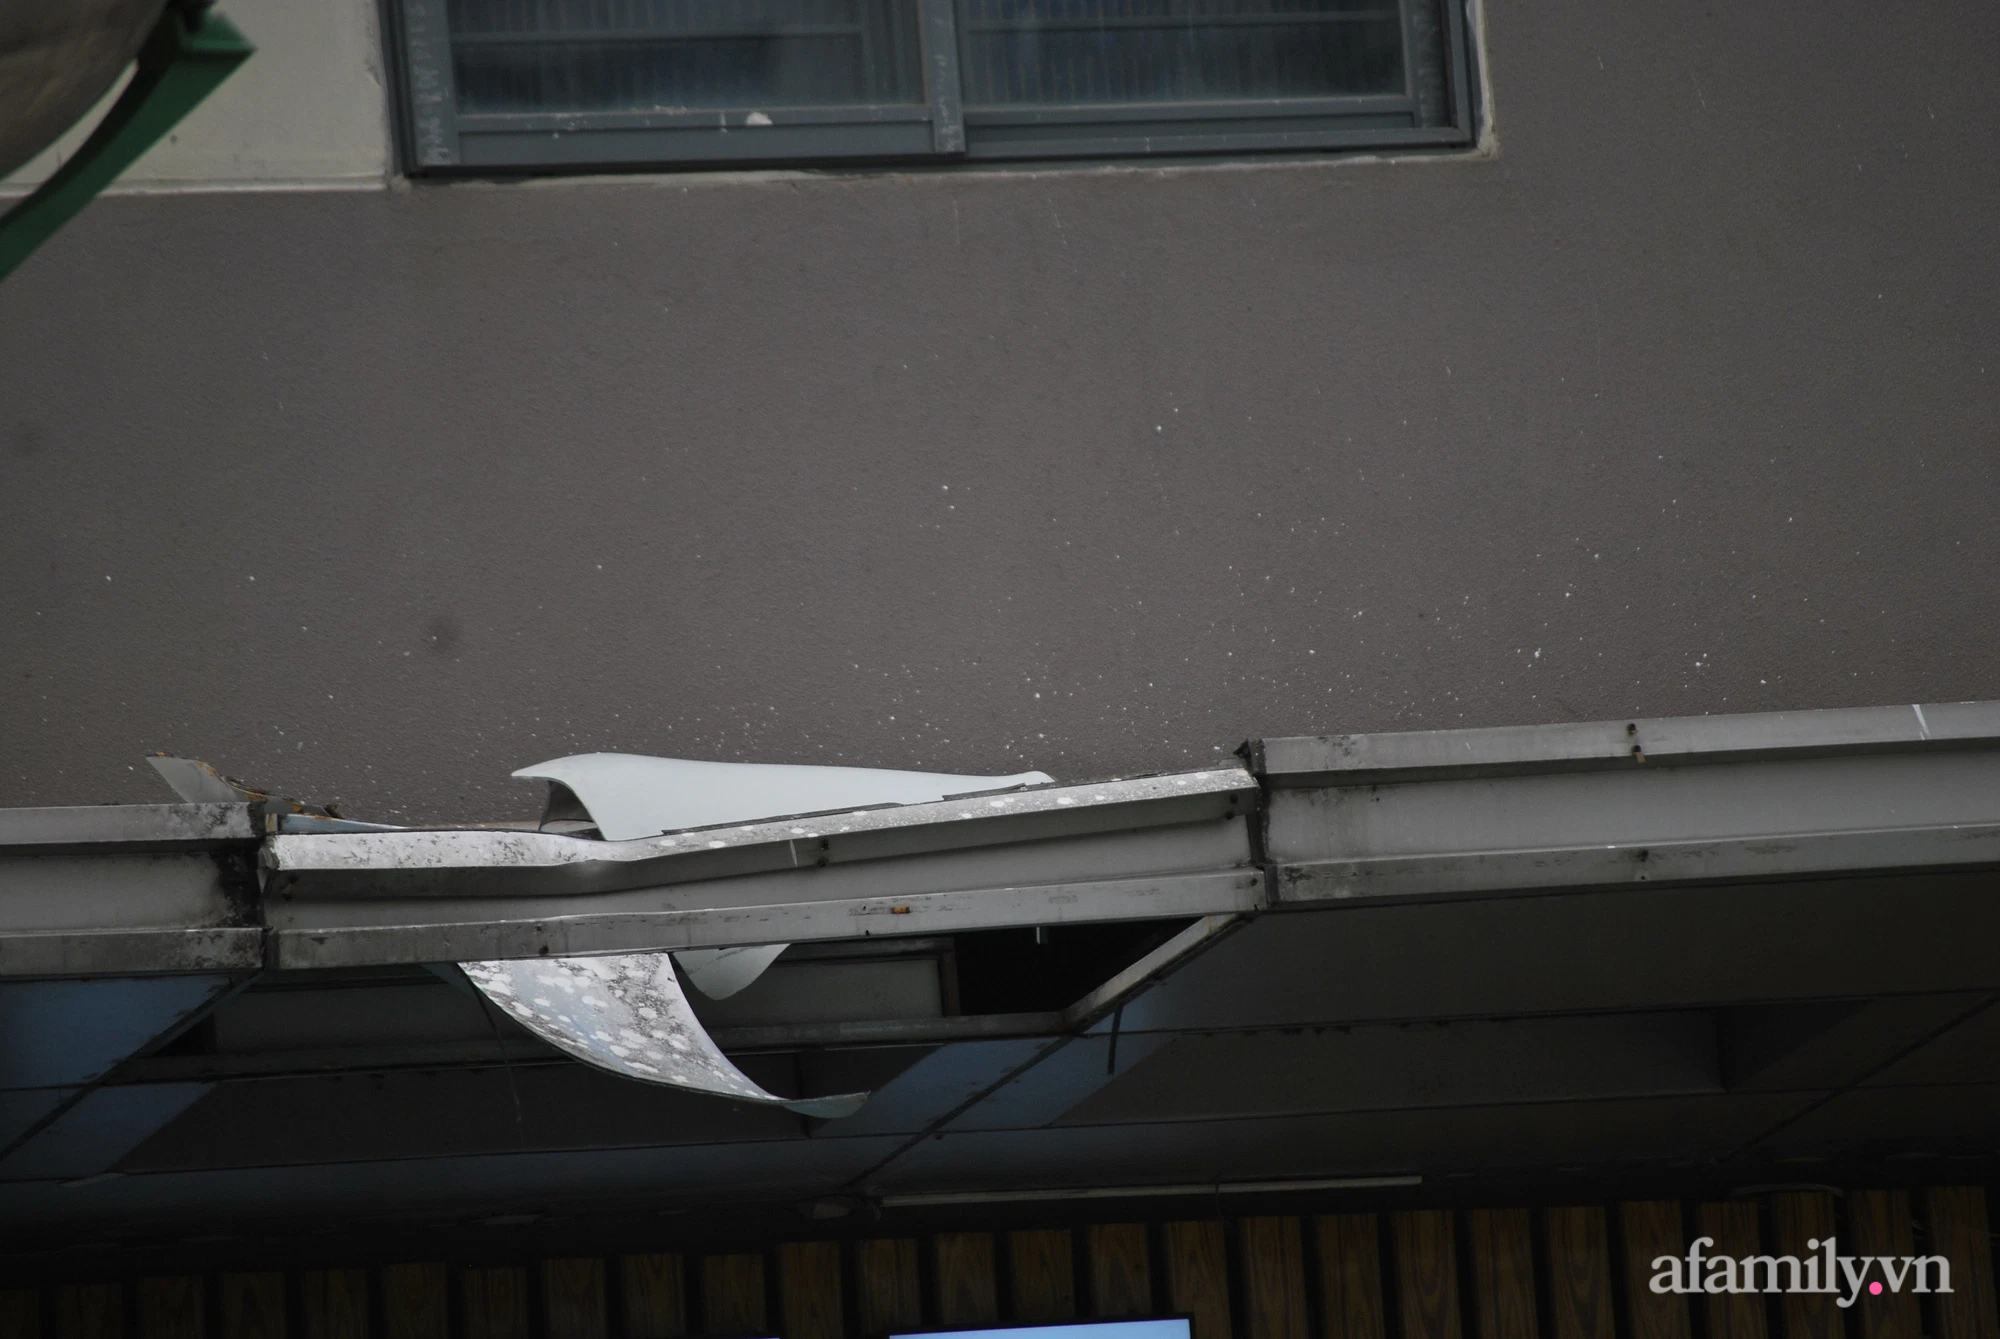 Hà Nội: Một người tử vong sau khi rơi thủng mái hiên tòa nhà chung cư - Ảnh 1.